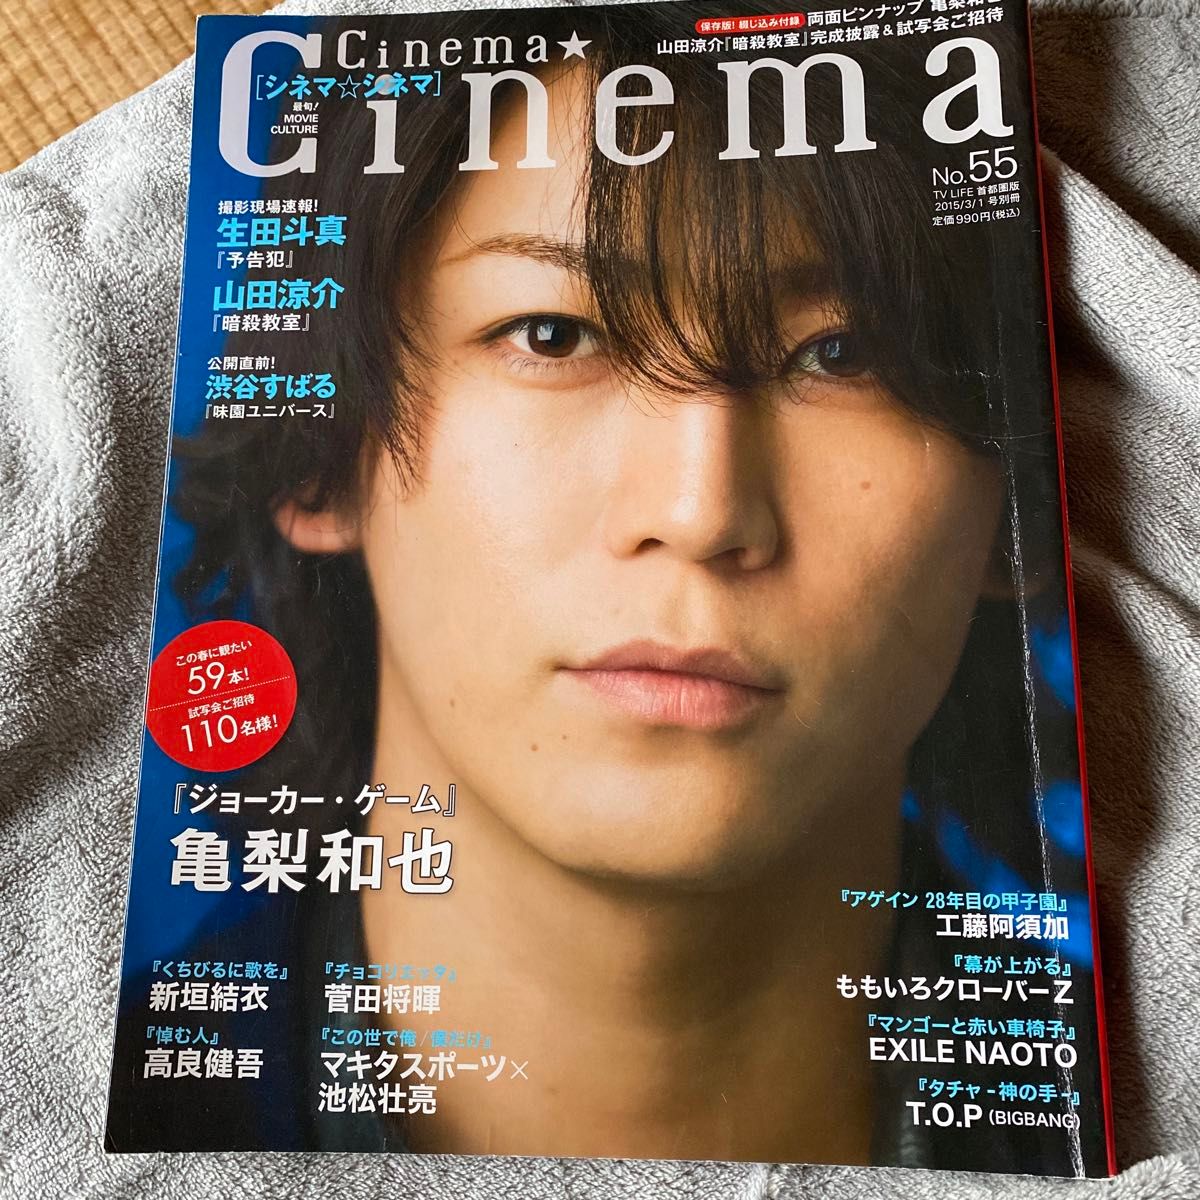 ホビー雑誌 Cinema★Cinema NO.55